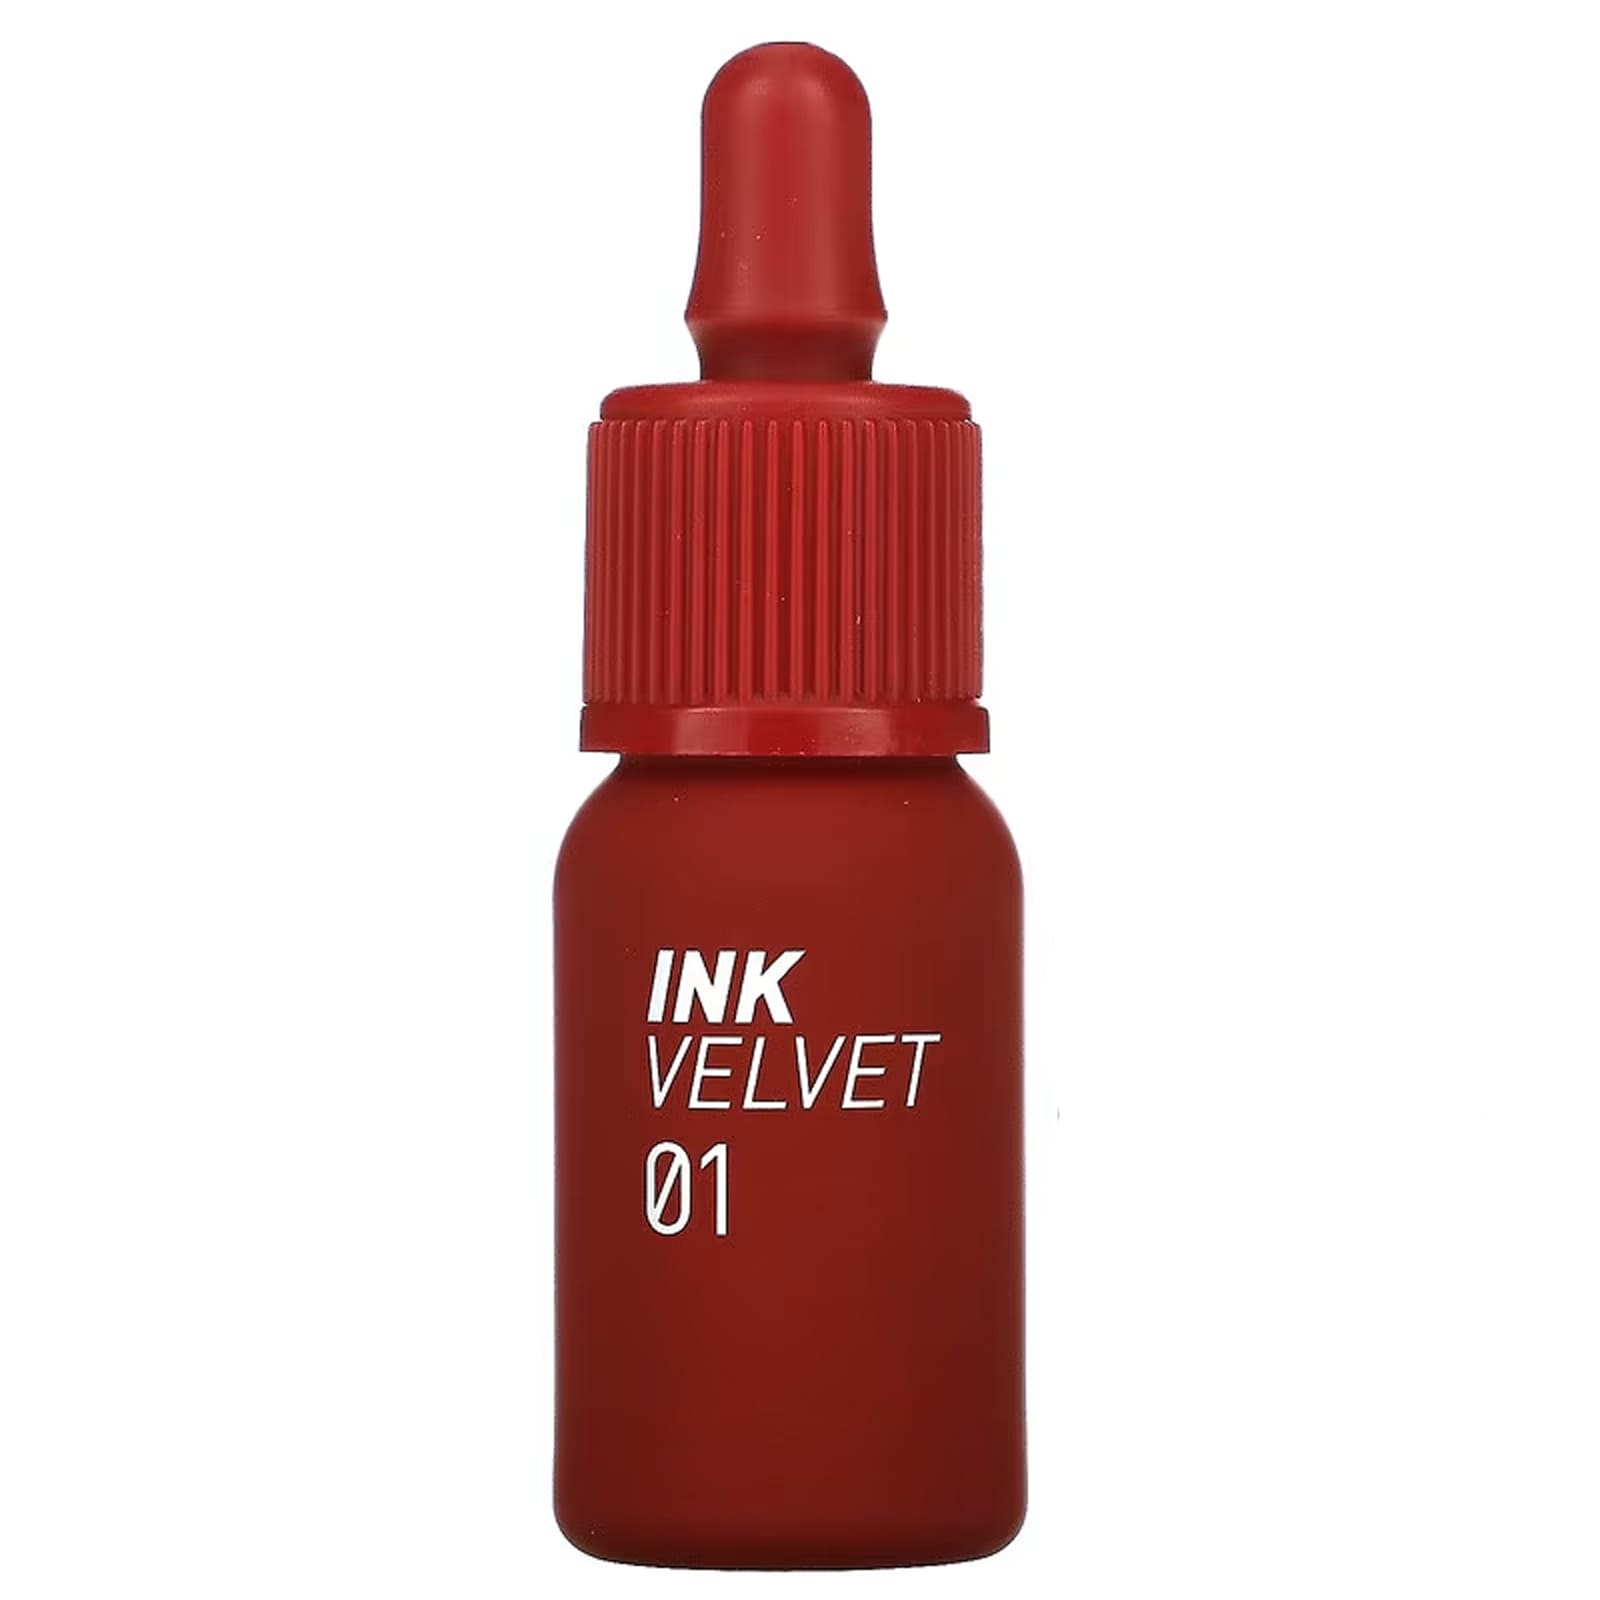 Тинт Peripera Ink Velvet для губ, 4 г peripera тинт для губ ink velvet 34 смоки красный 4 г 0 14 унции